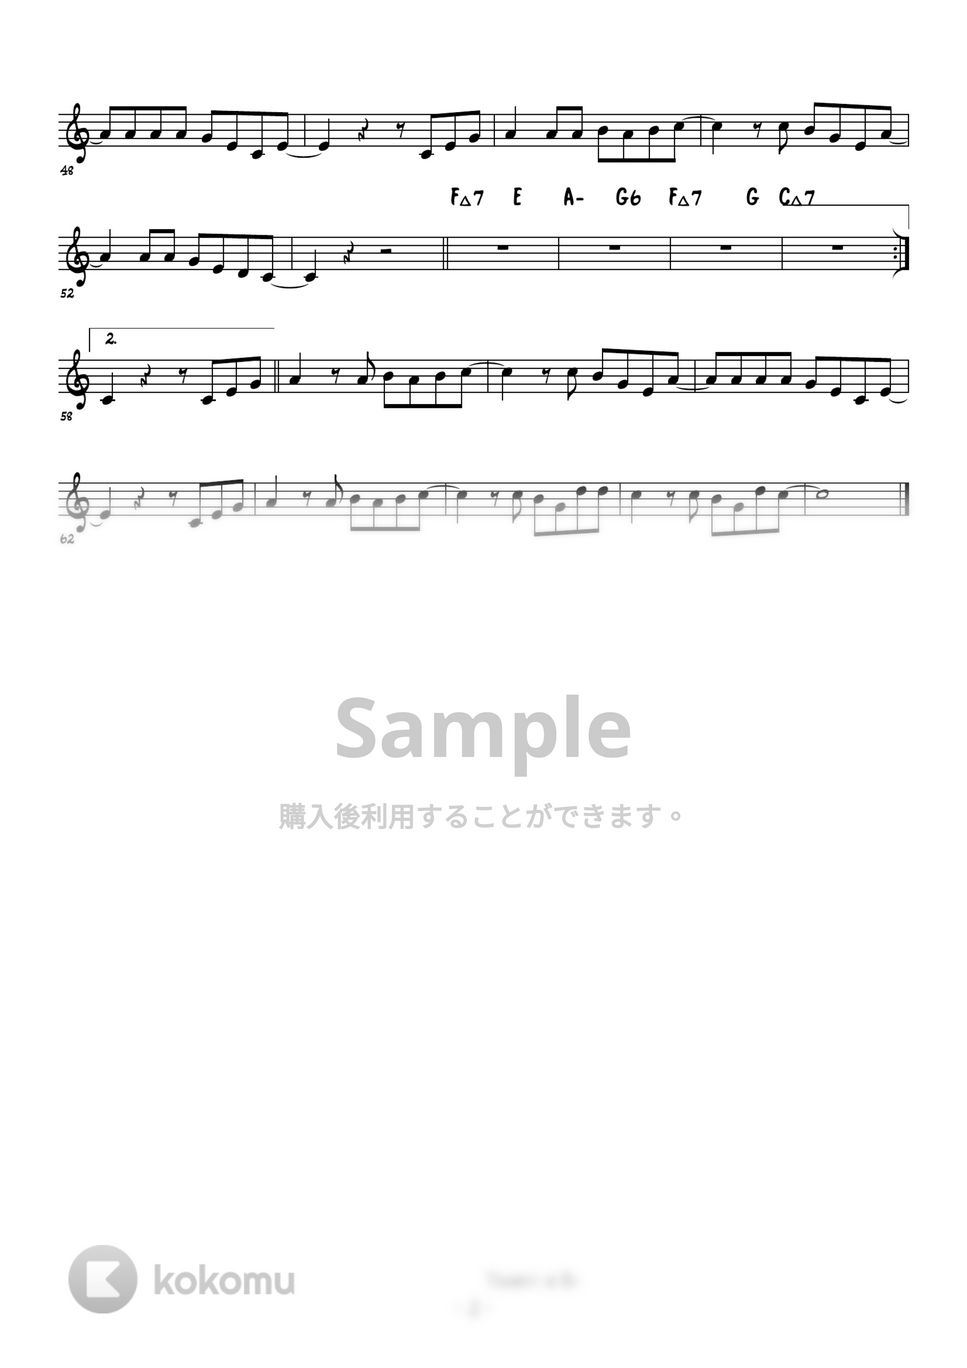 SMAP/スガシカオ - 夜空ノムコウ (トランペットメロディー楽譜) by 高田将利